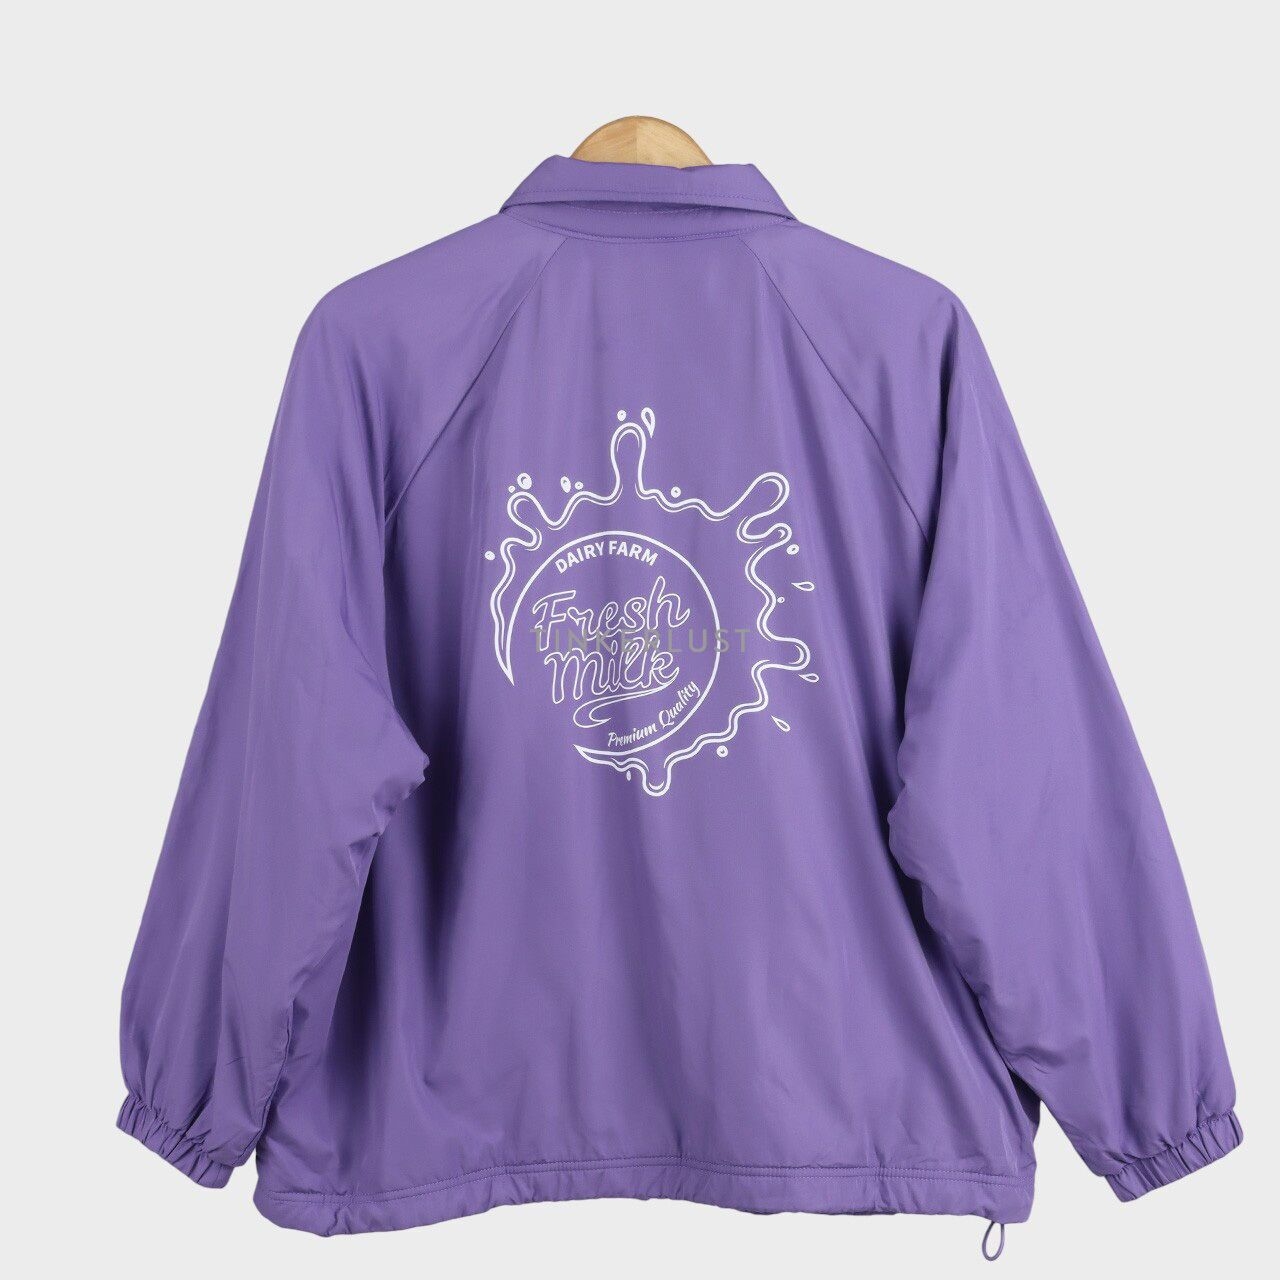 H&M Lavender Jacket